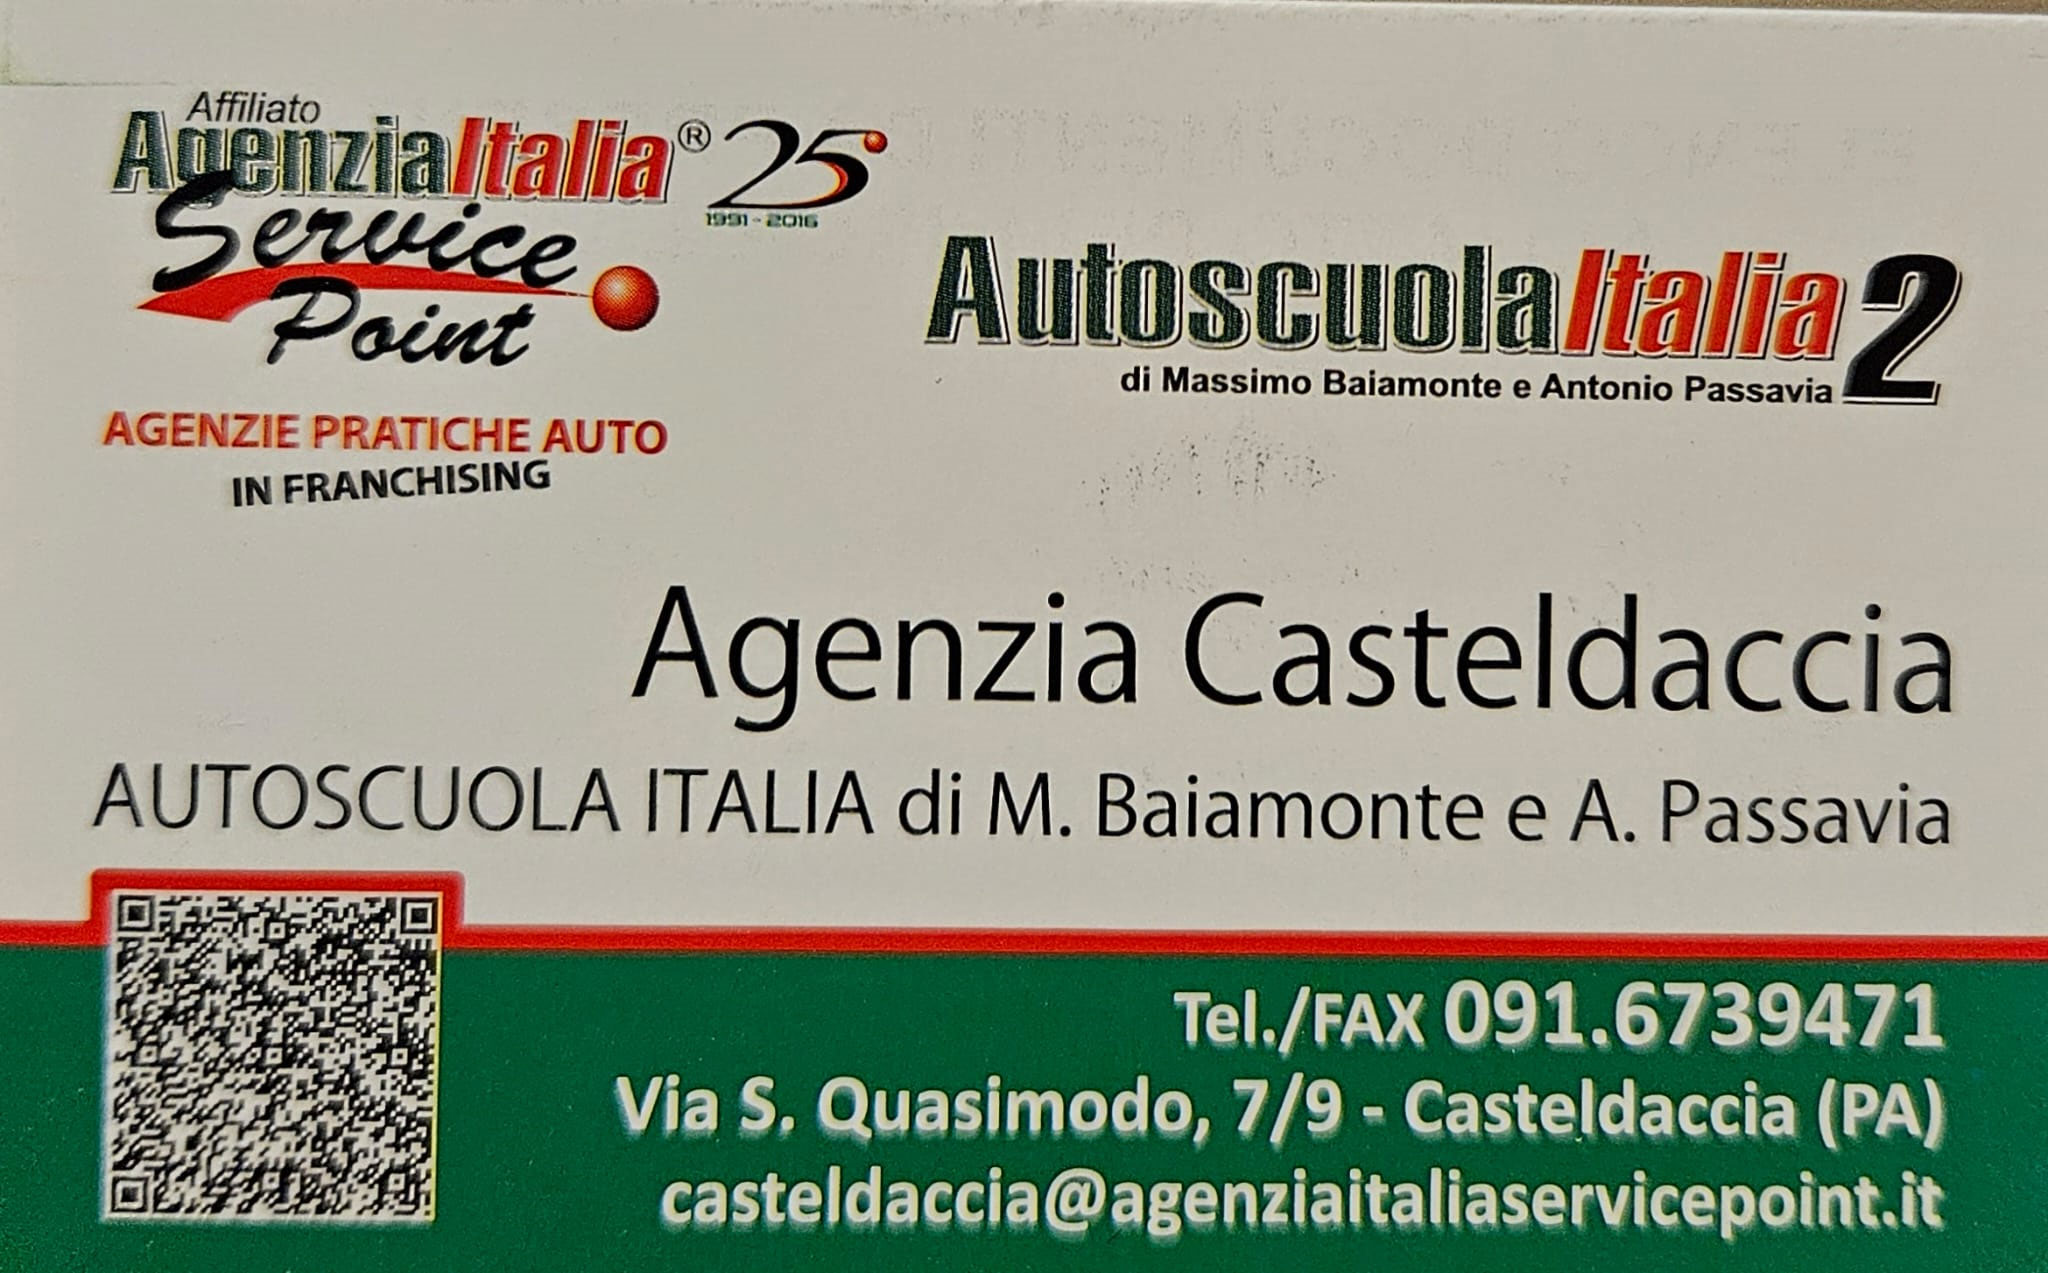 Autoscuola Italia 2